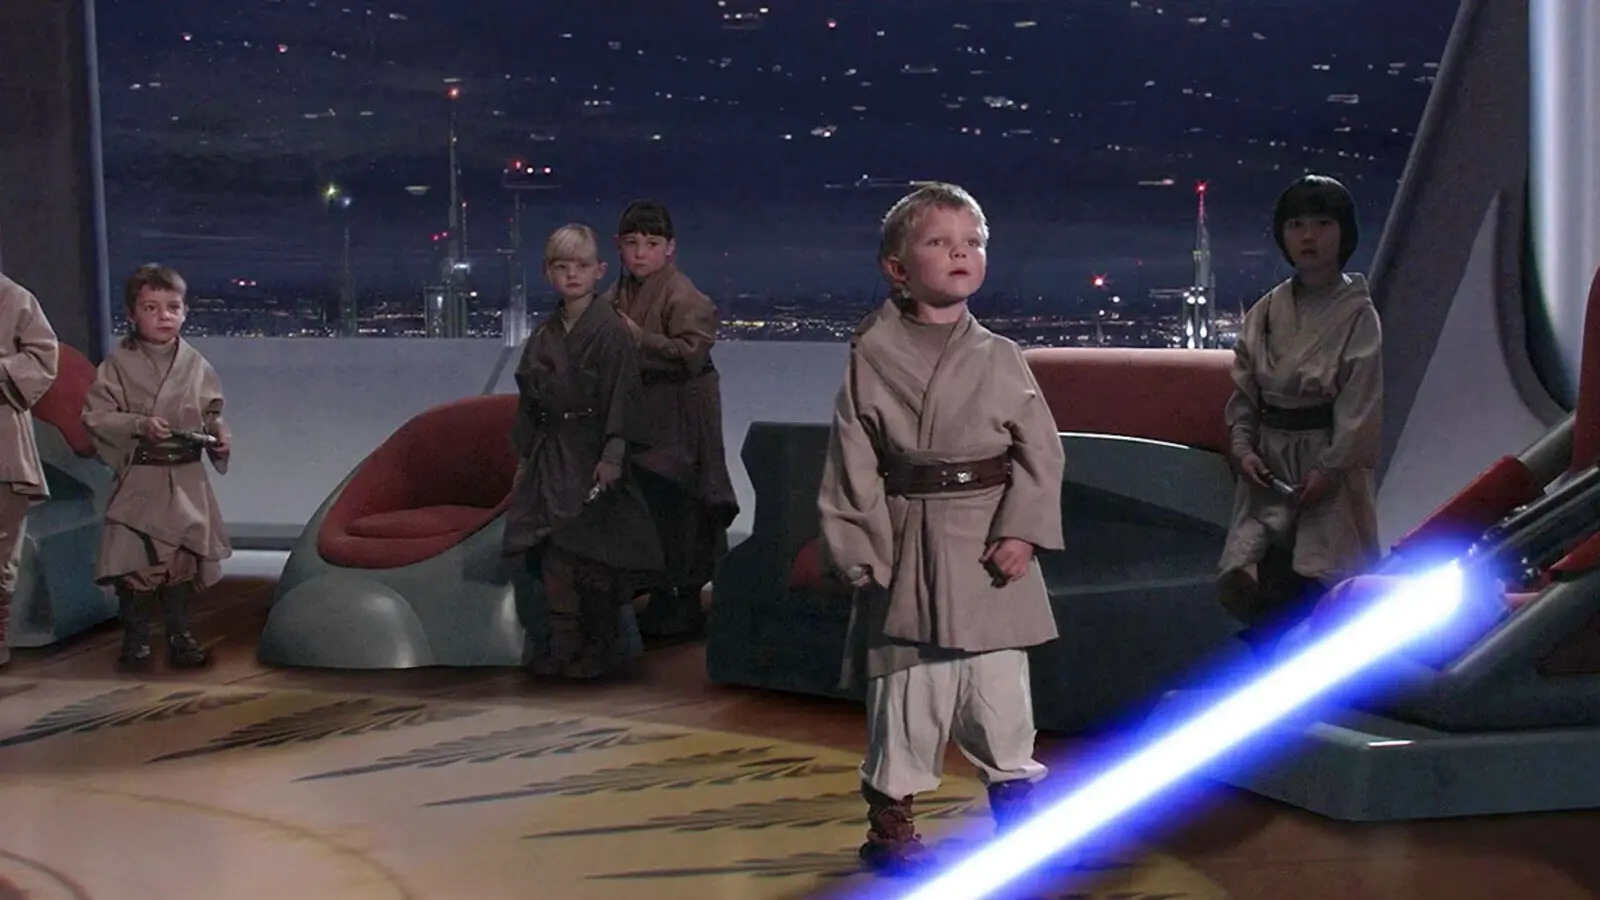 Star Wars Scene featuring violence against children